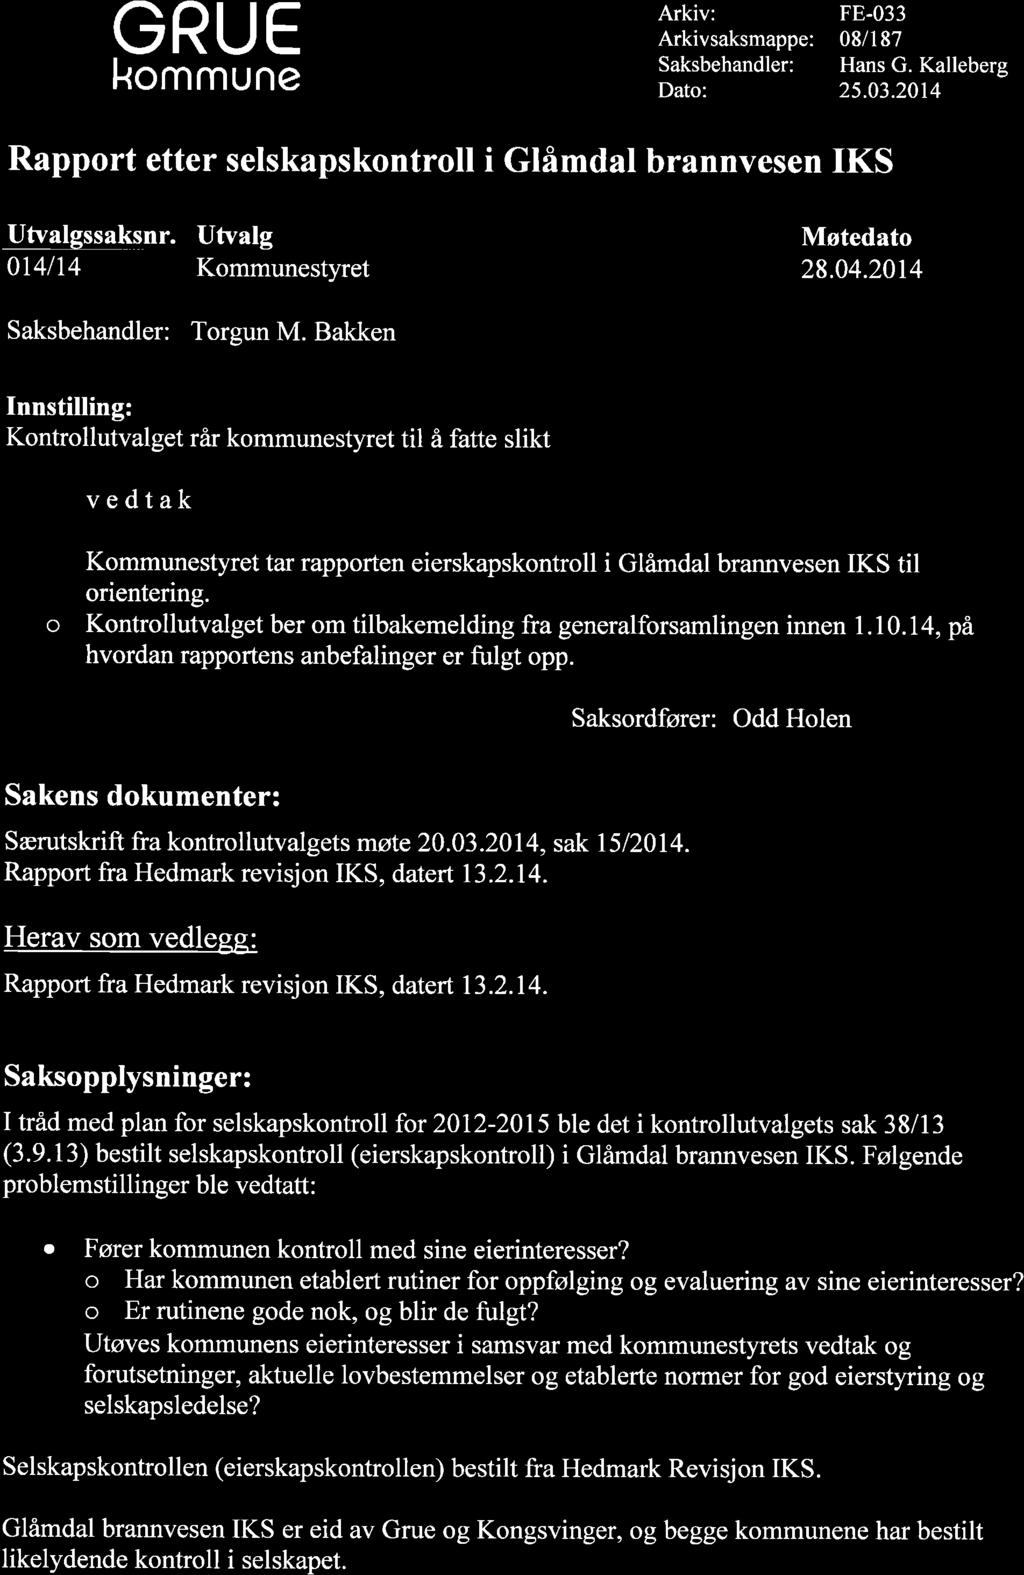 GRUE kommune Arkiv: Arkivsaksmappe: Saksbehandler: Dato: FE-033 08/1 87 Hans G. Kalleberg 25.03.2014 Rapport etter selskapskontroll i Glåmdal brannvesen IKS Utvalgssaksnr.